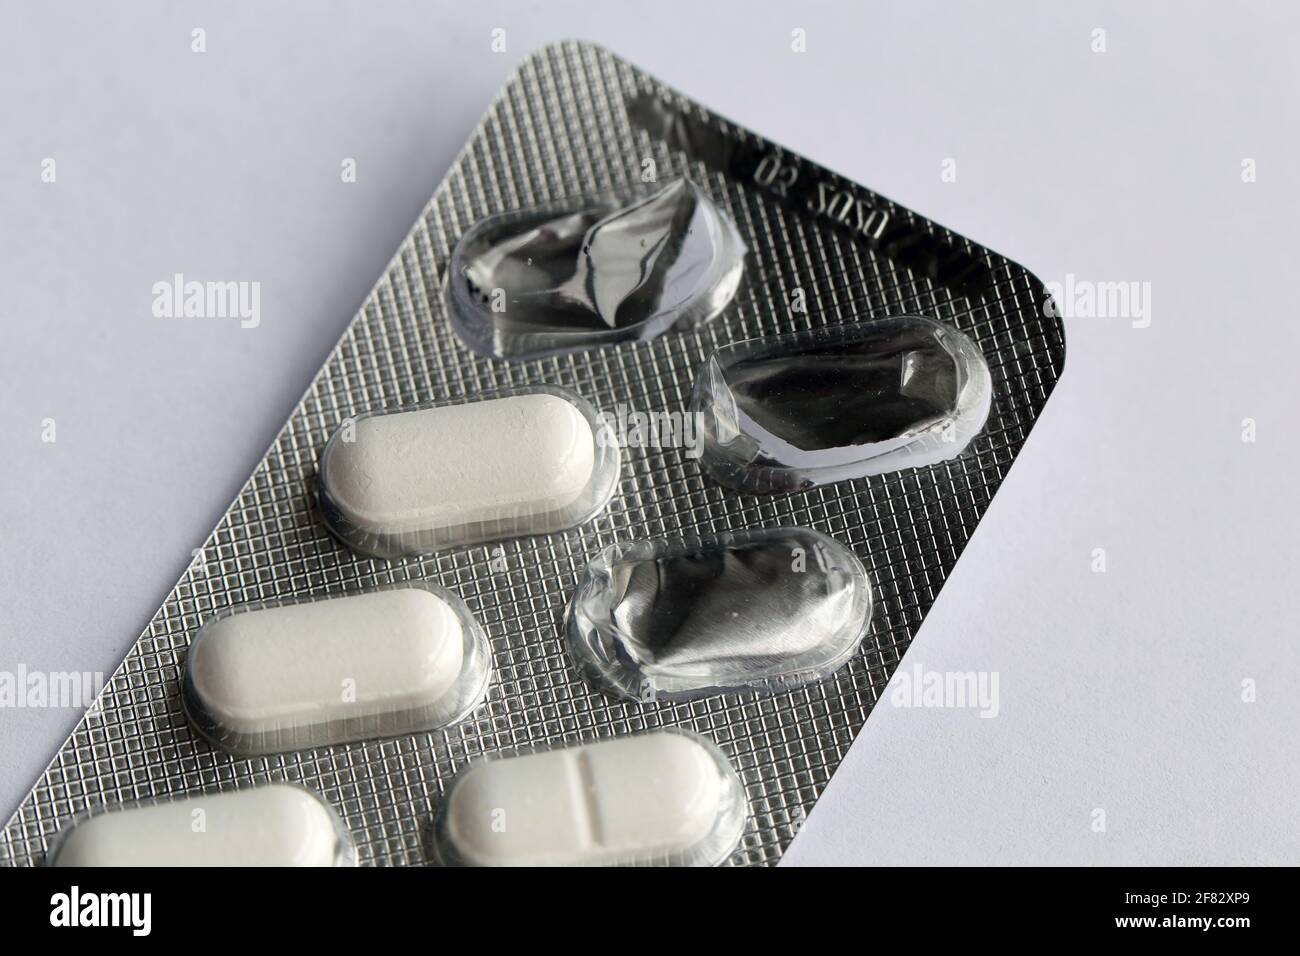 Ibuprofène (Ibumax 400mg) comprimés, il s'agit d'un anti-inflammatoire non stéroïdien (AINS) qui soulage la douleur et traite l'inflammation. Banque D'Images